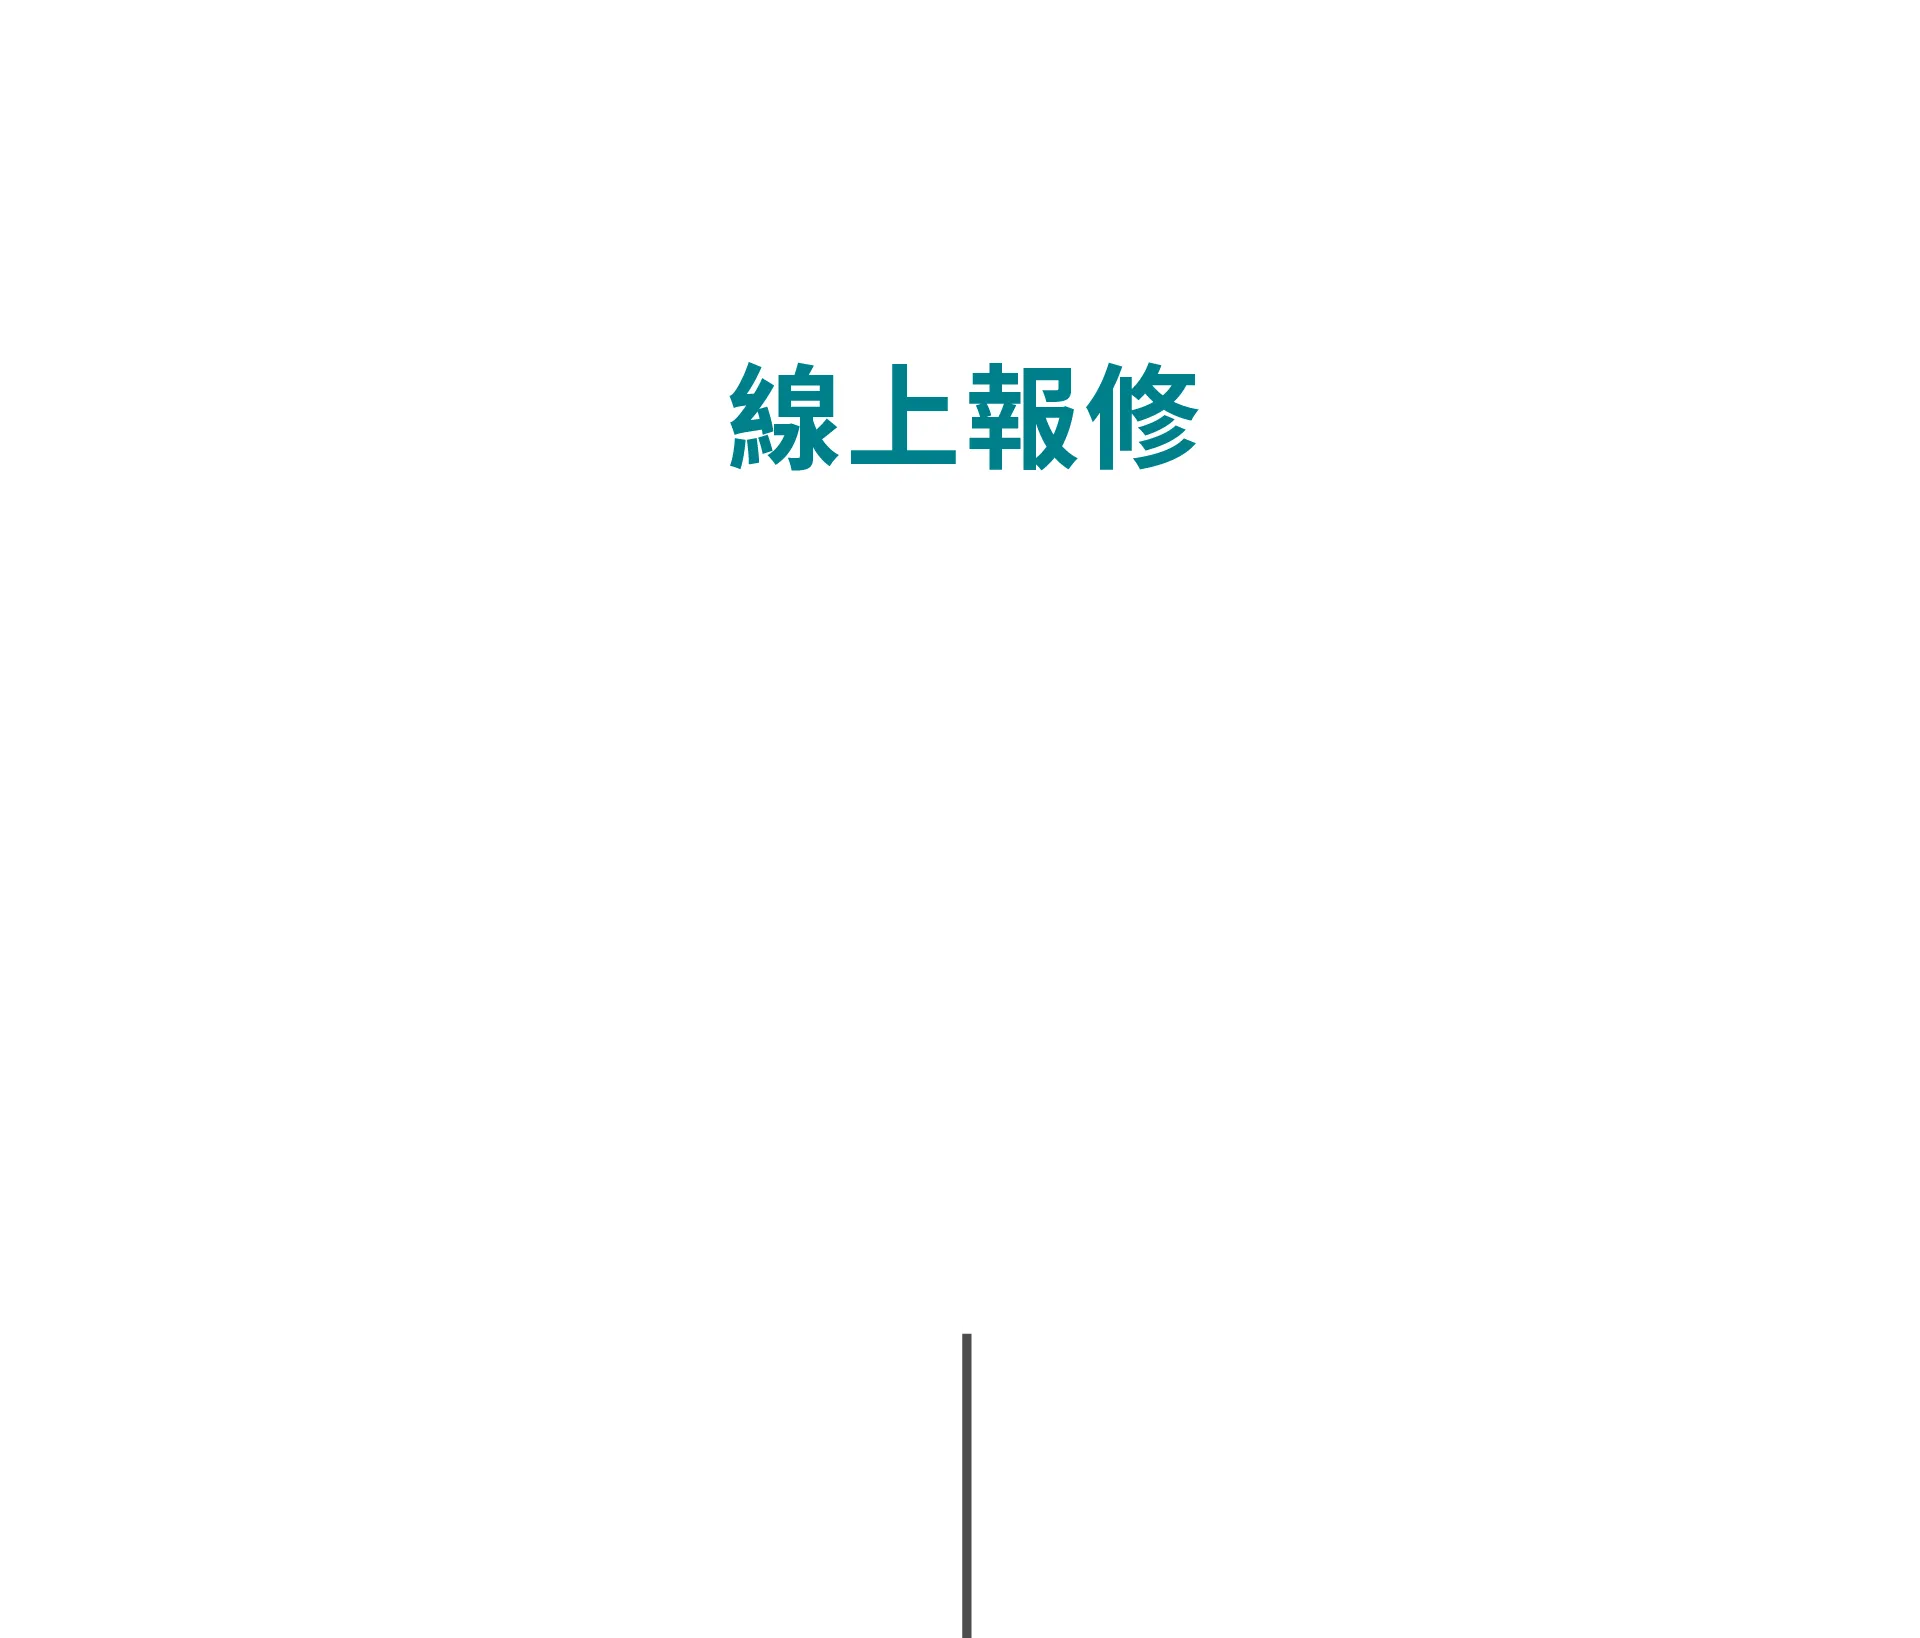 Repair Service Title@1920x